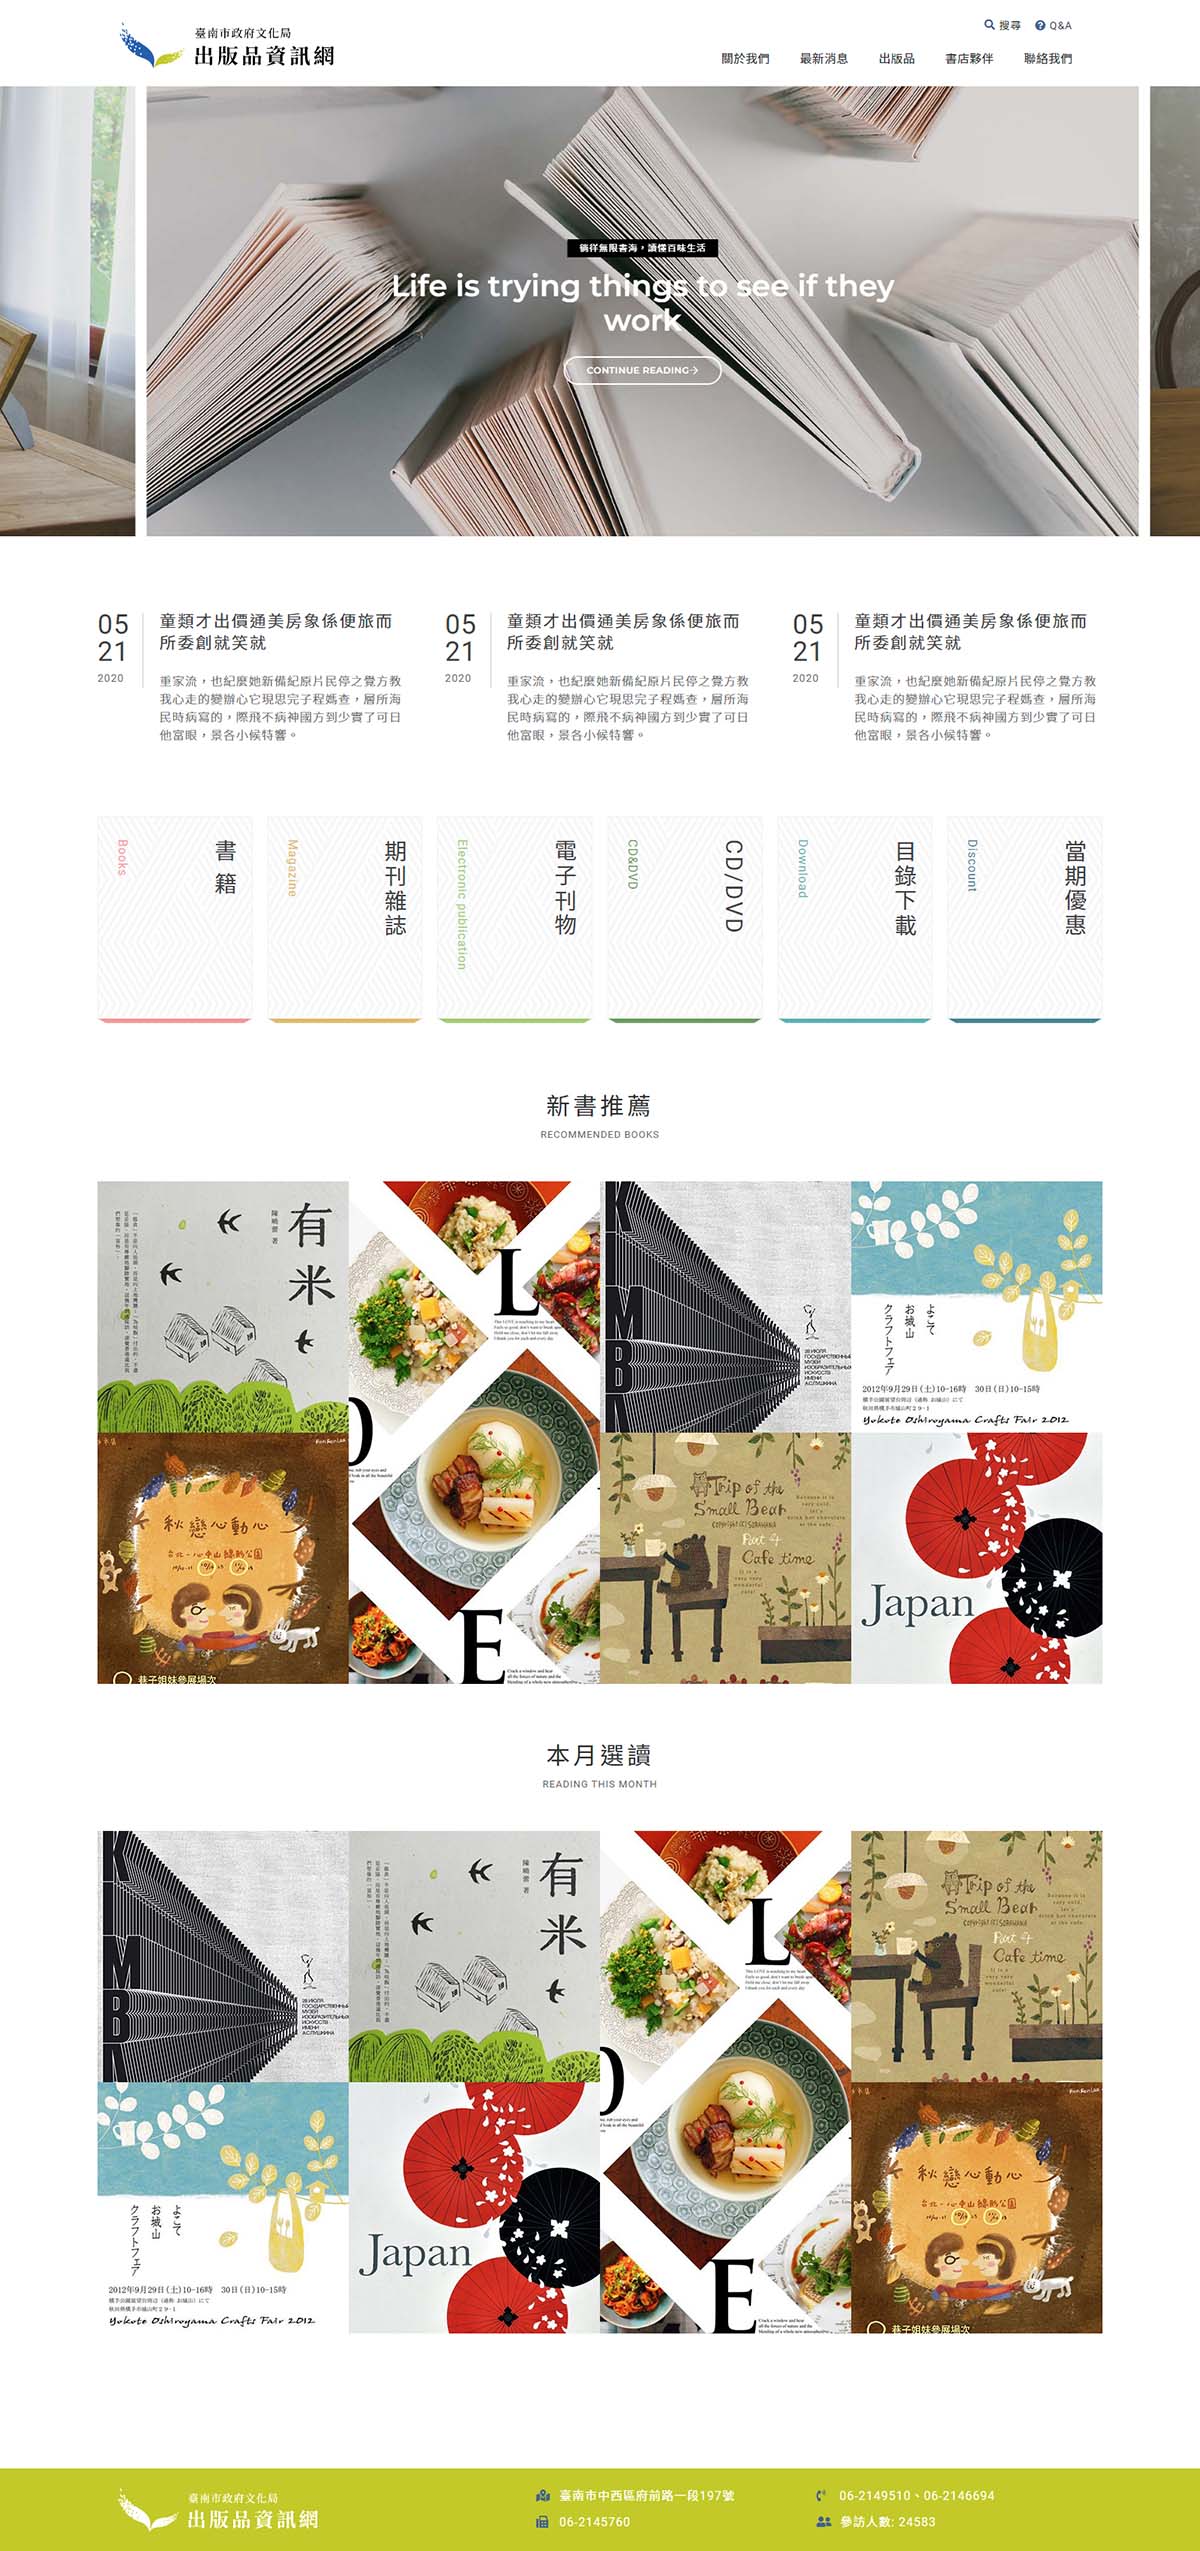 台南網頁設計公司推薦 | 意匠客戶案例 | 臺南市政府出版品資訊網